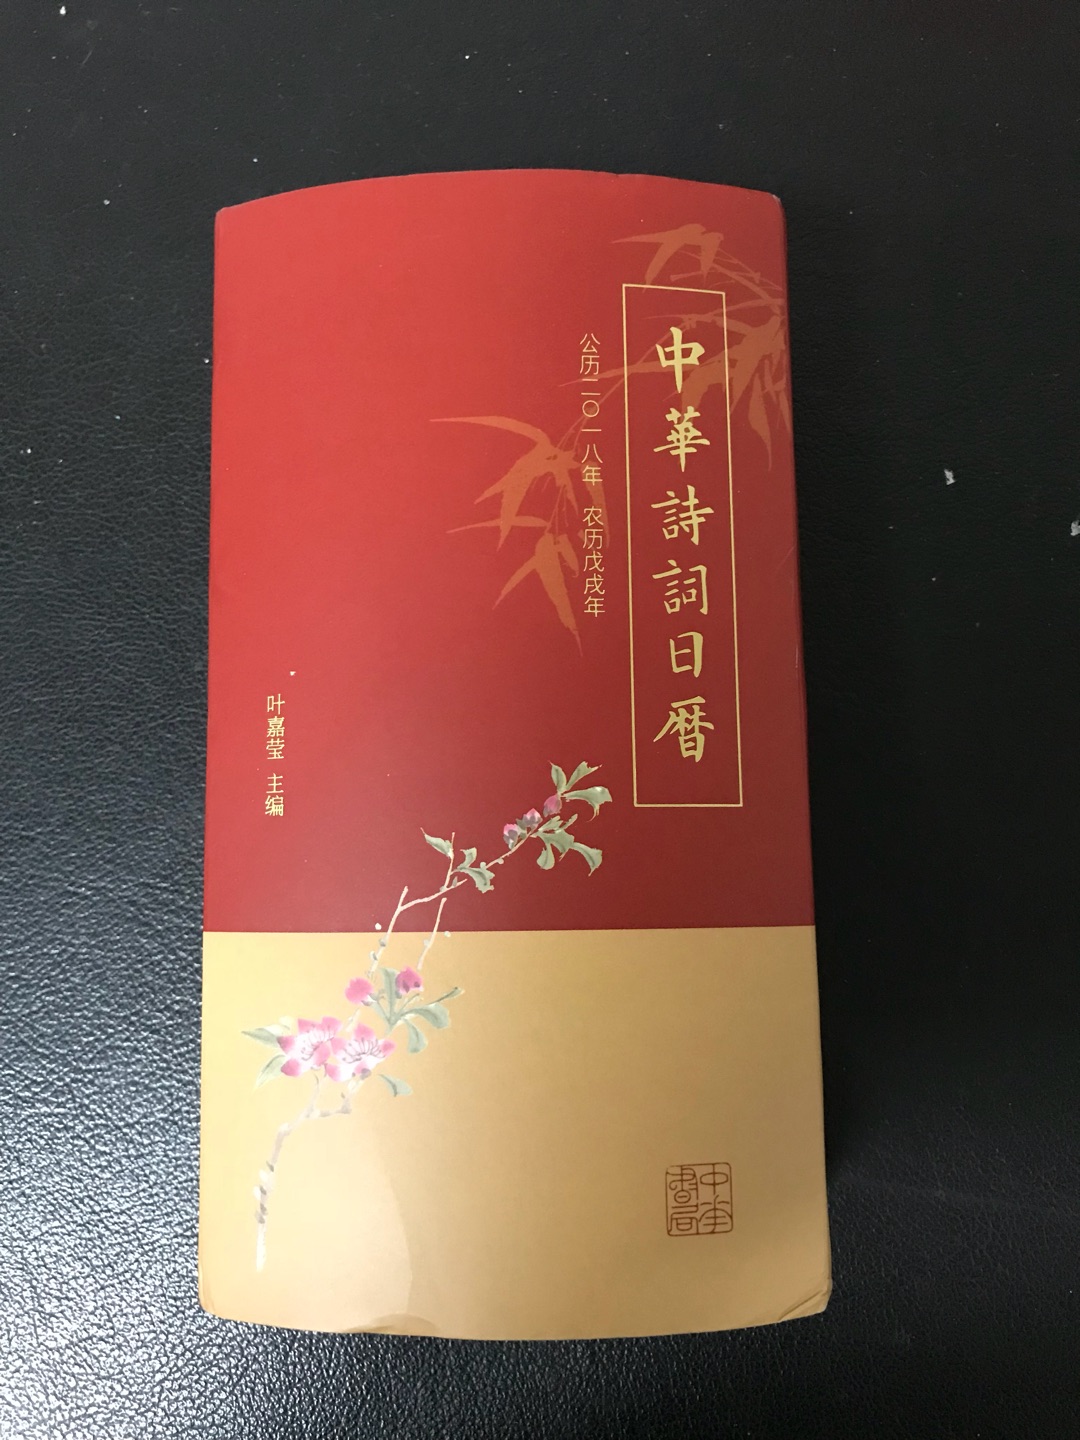 中华书局出版的《中华诗词日历》所附诗词均有简略解释、评介。对于初学者来说很有必要。另一个优点是附了一份诗人词人小传，使日历成为一本内容完整的诗词教科书手册。